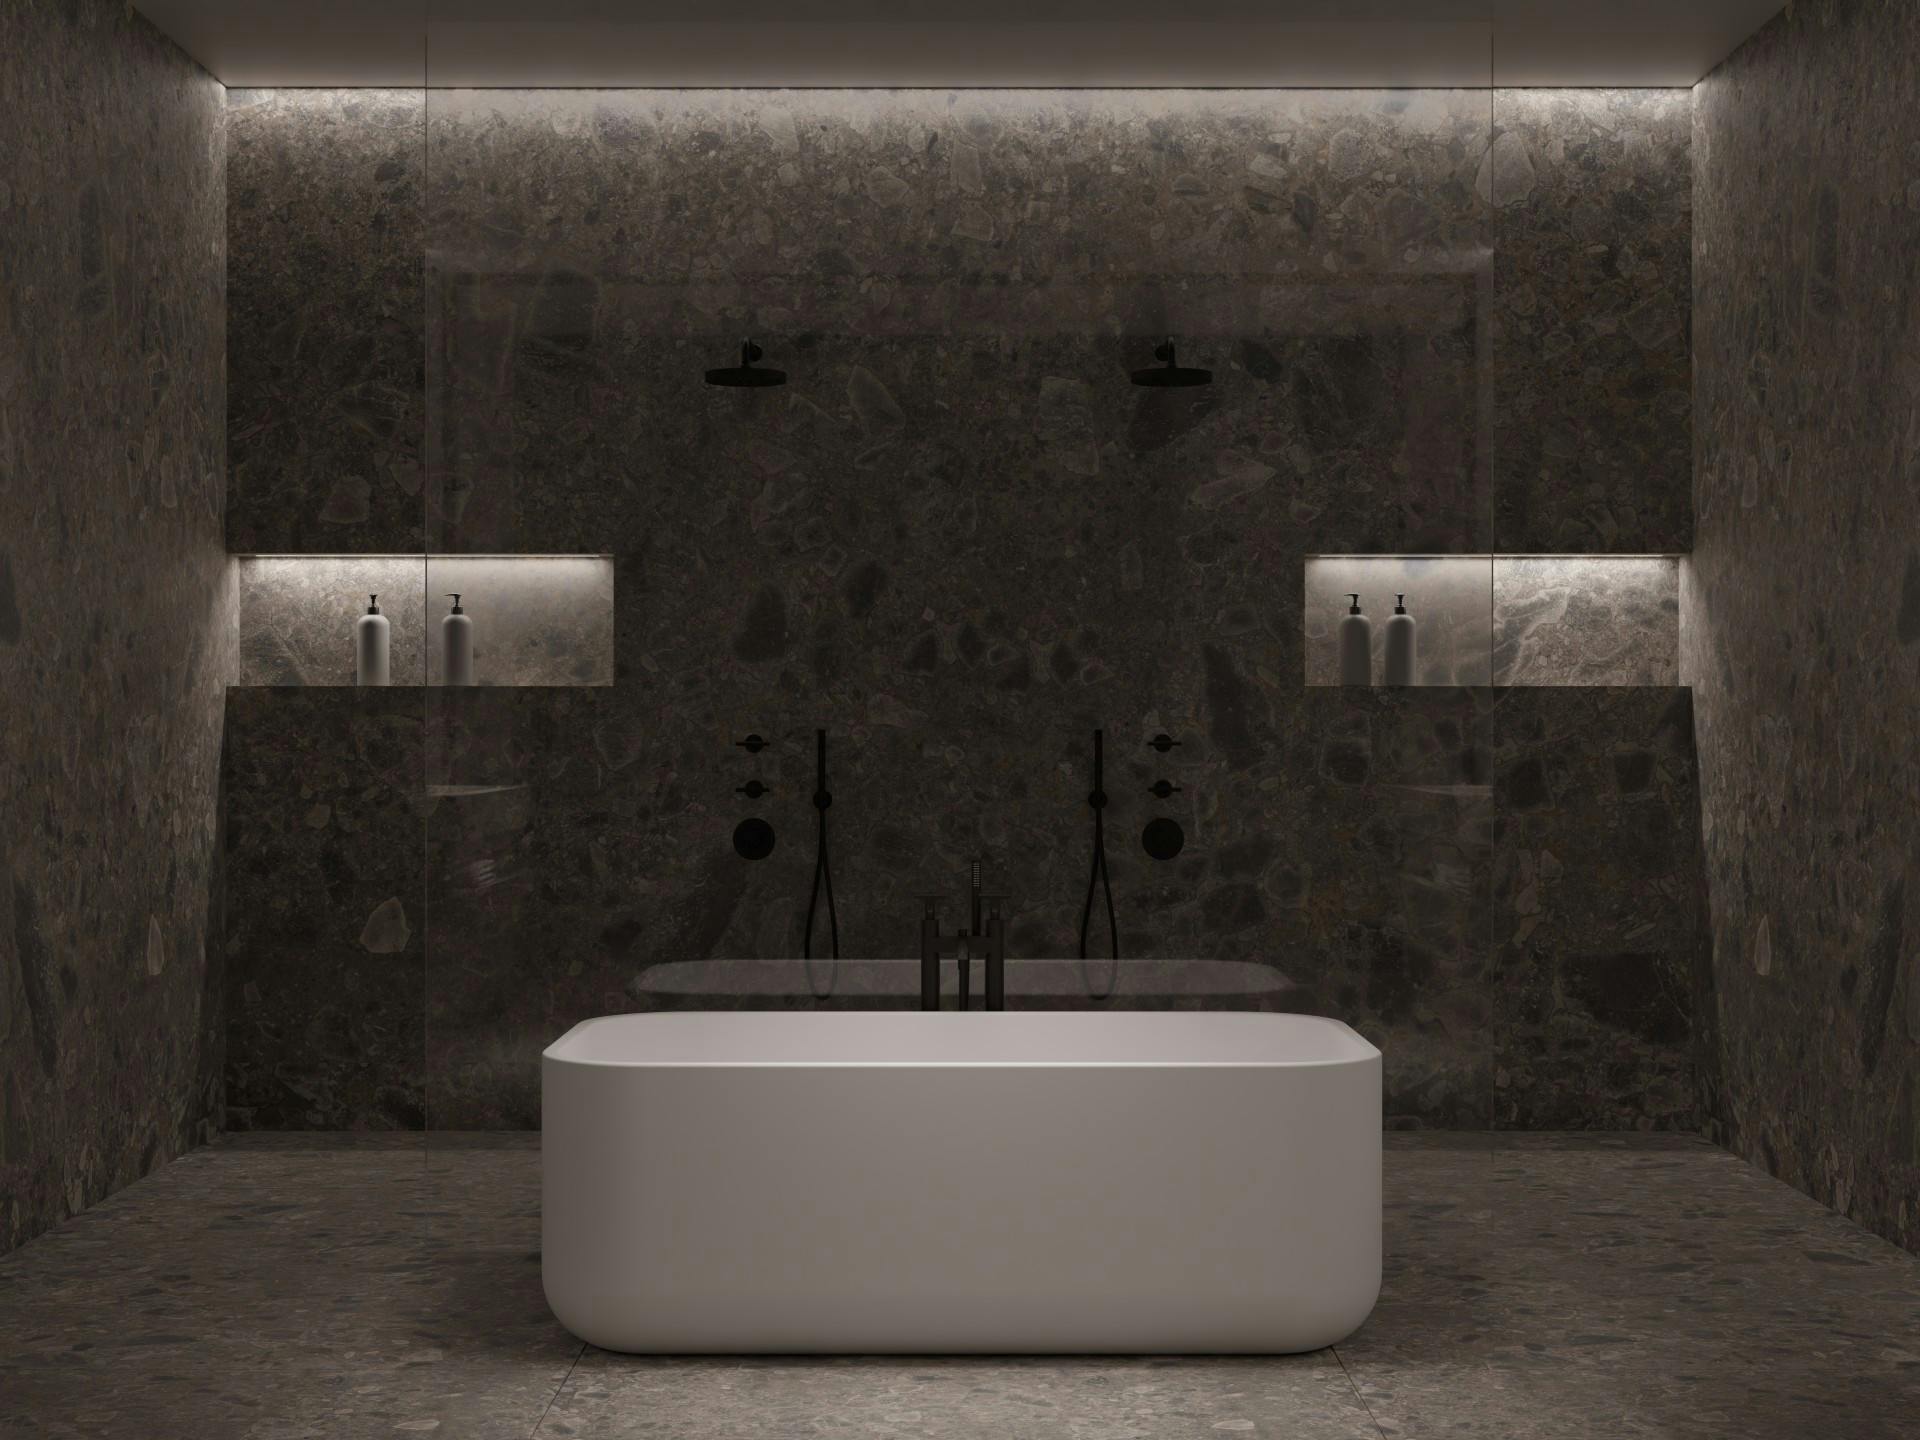 Numero immagine 35 della sezione corrente di Urban Hideaway: the bathroom with an architectural character designed by Remy Meijers di Cosentino Italia